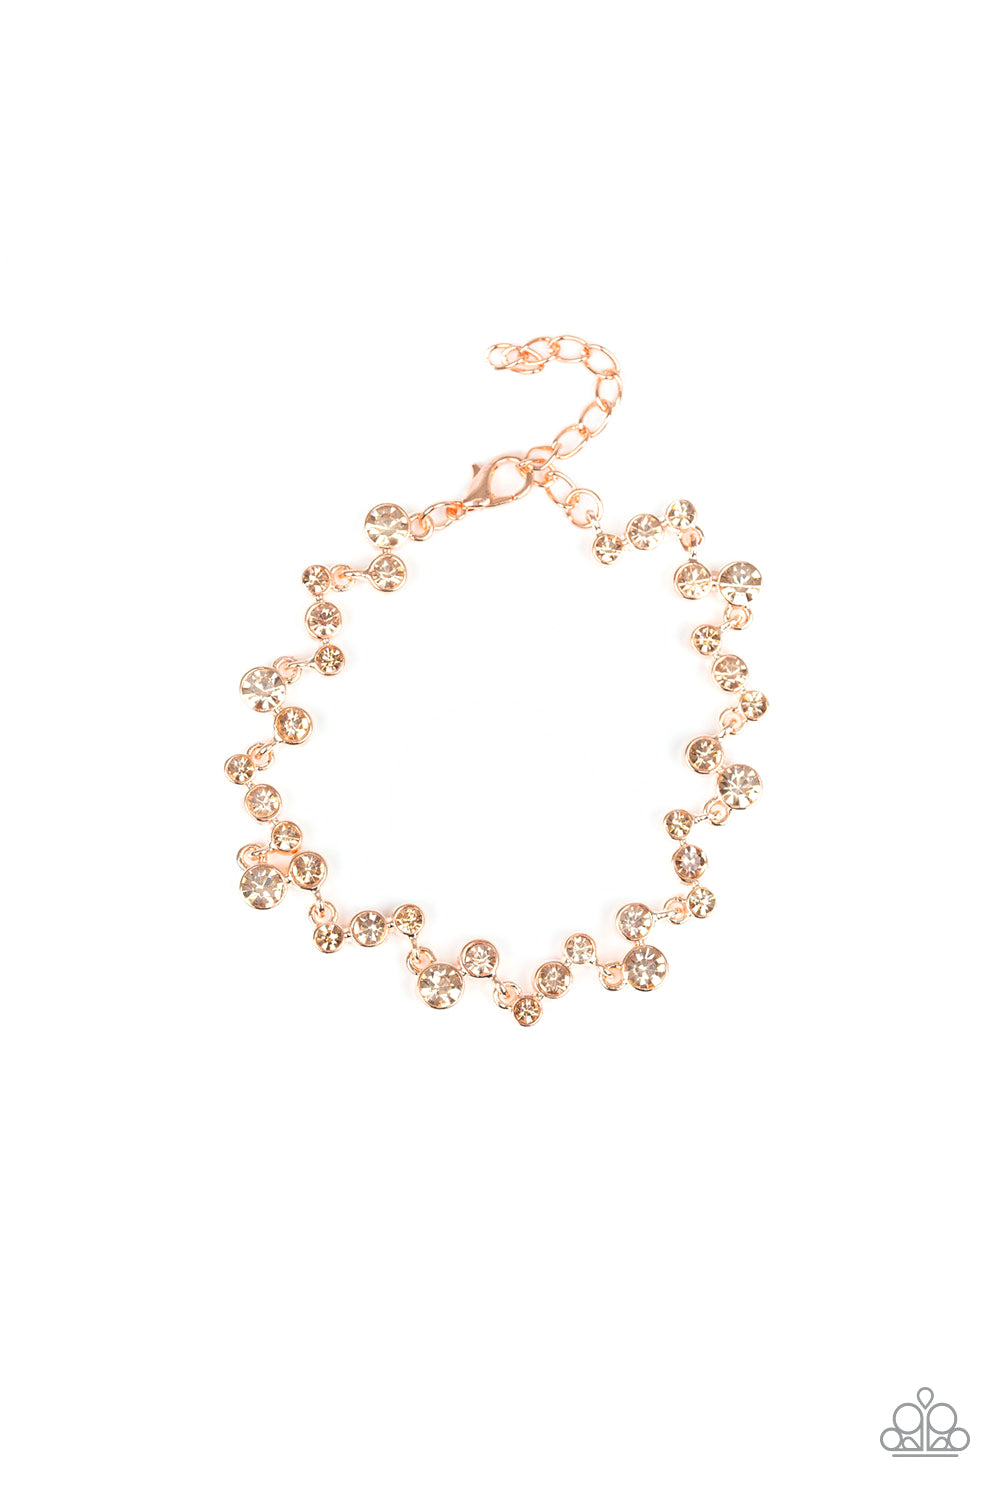 Starlit Stunner - Copper Bracelet - Princess Glam Shop